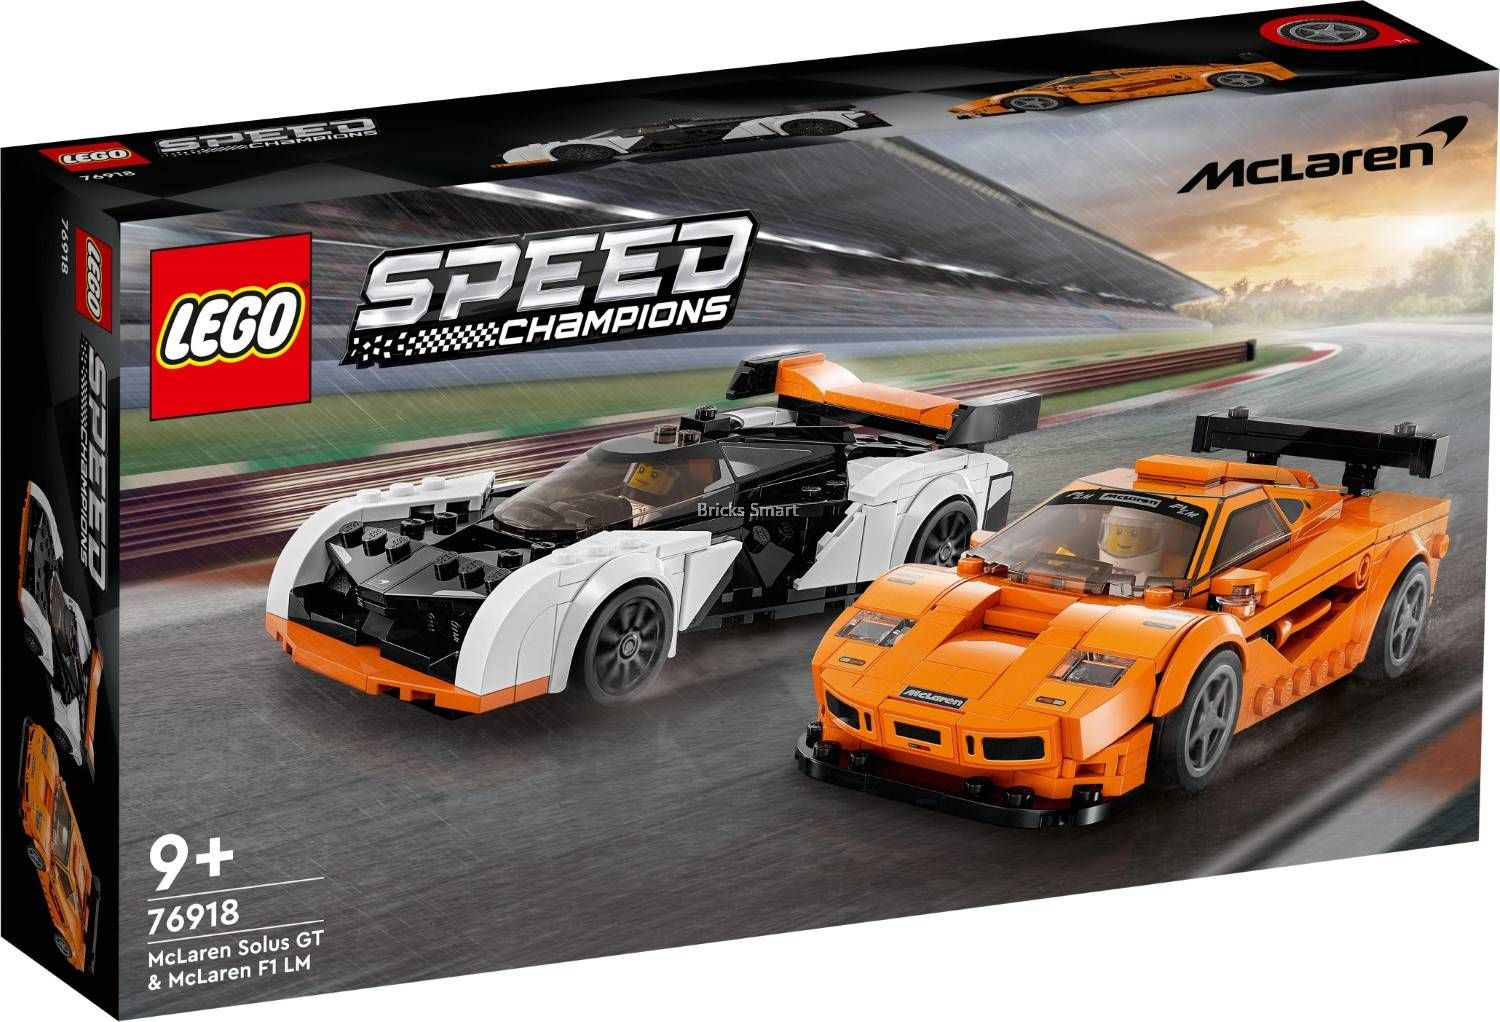 Lego McLaren Solus GT & McLaren F1 LM (76918) - B-Toys Keerbergen